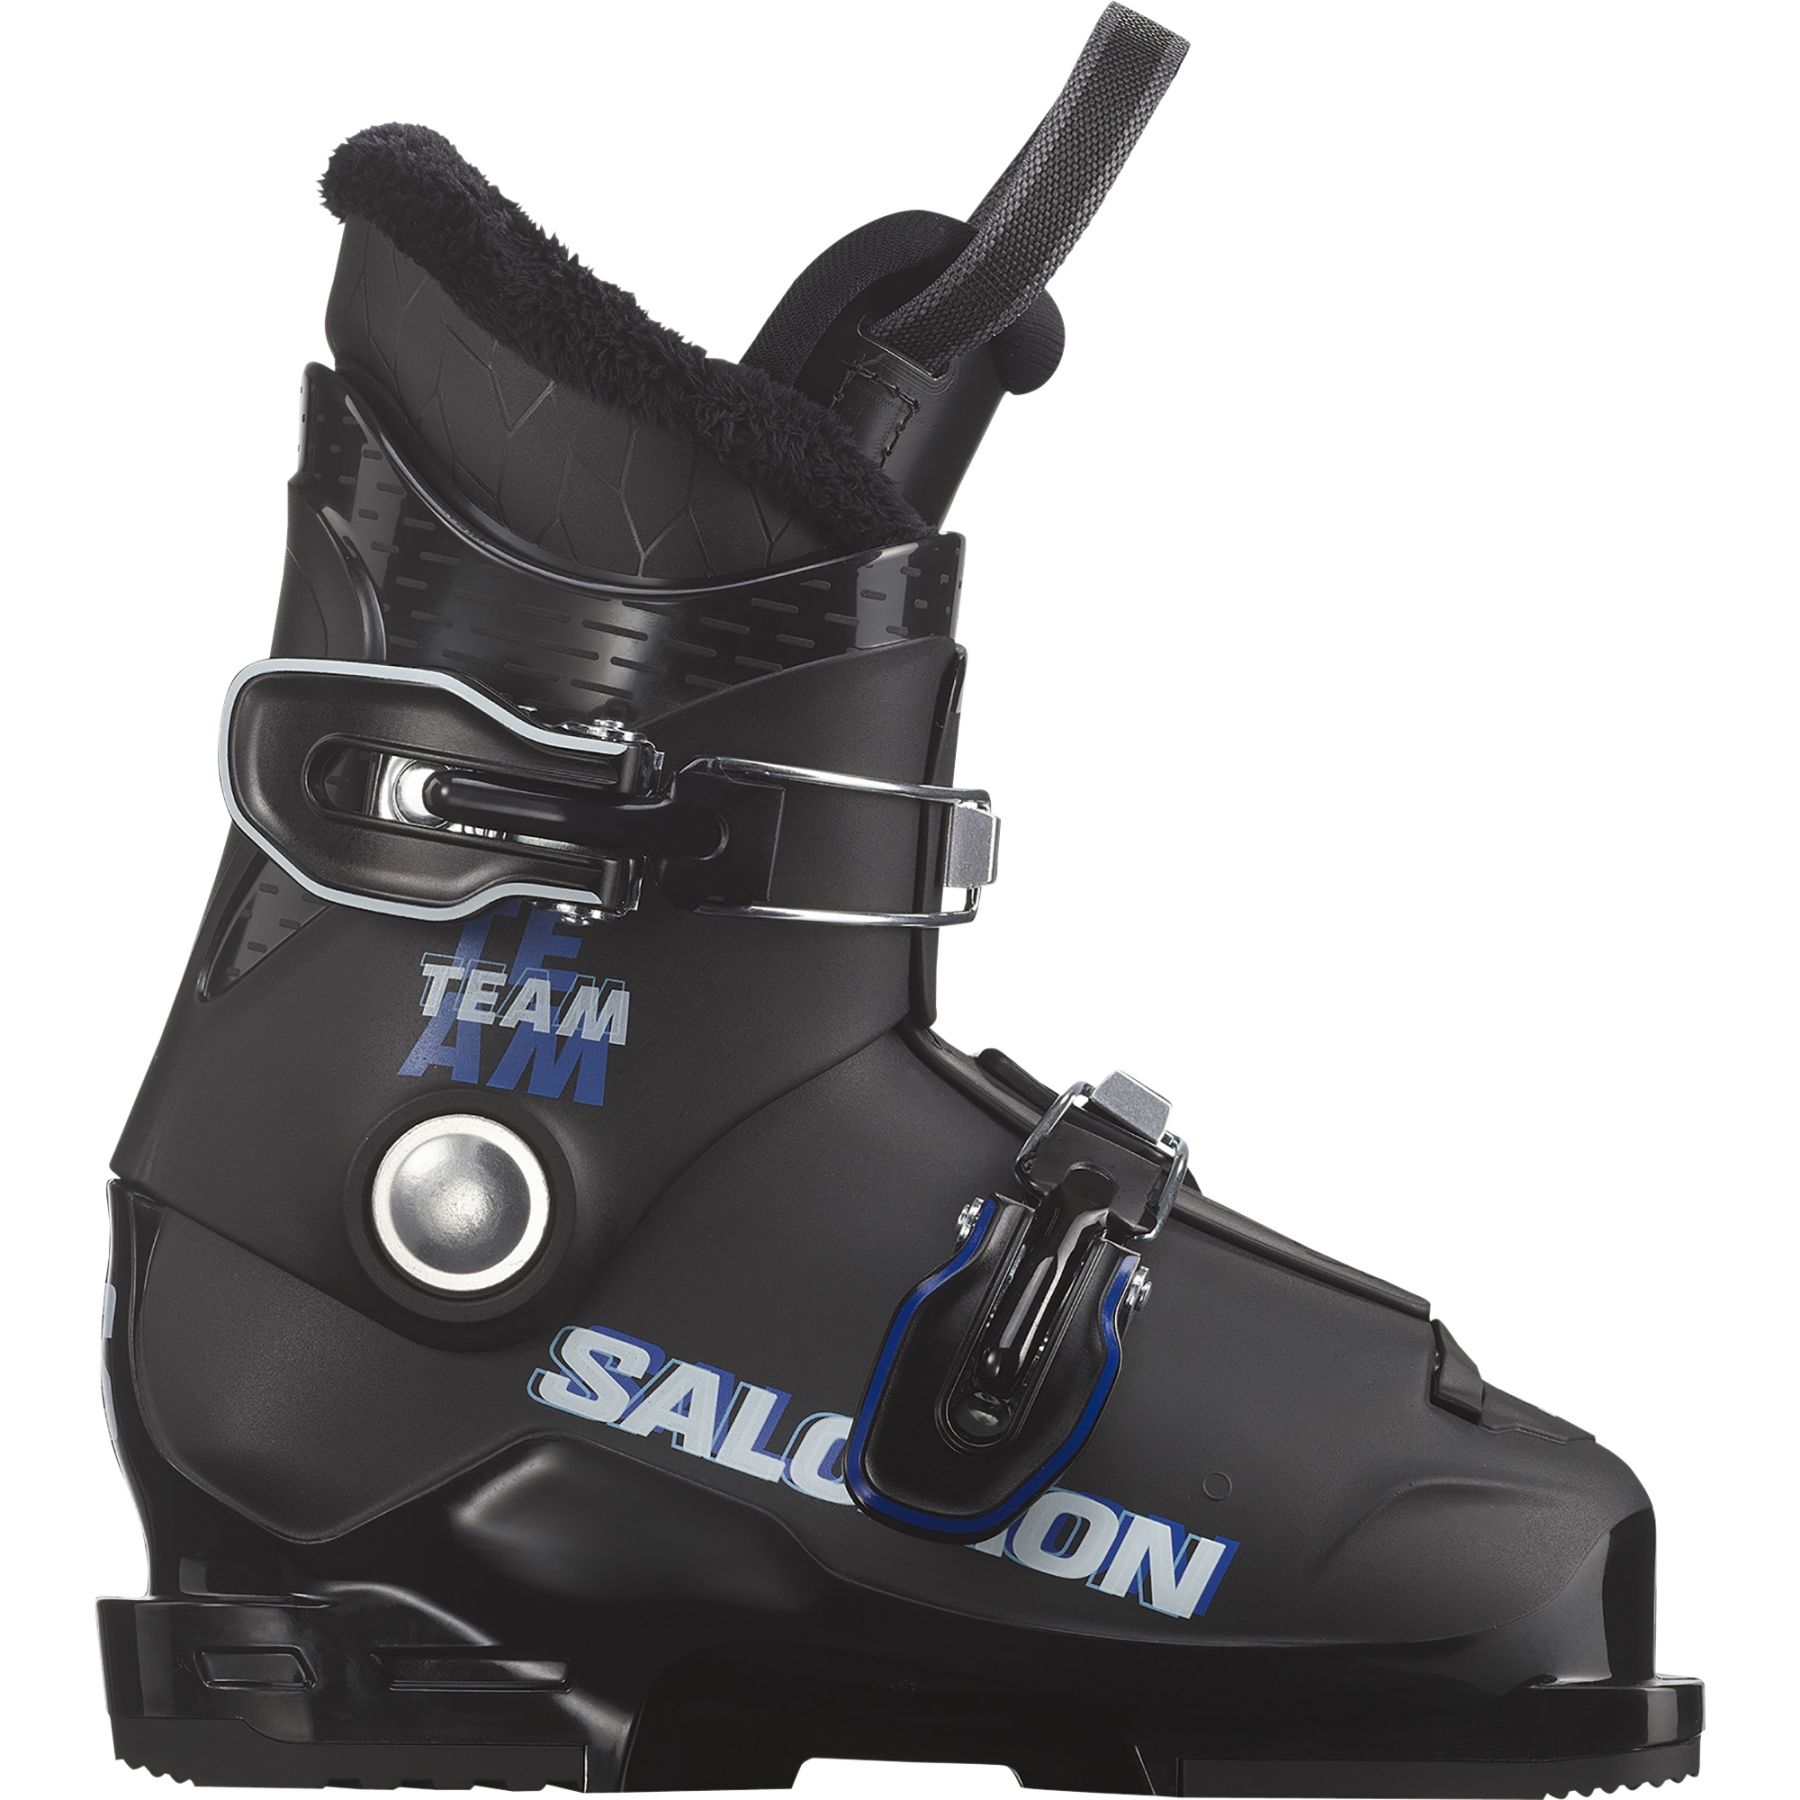 Brug Salomon Team T2, skistøvler, junior, sort/blå/hvid til en forbedret oplevelse